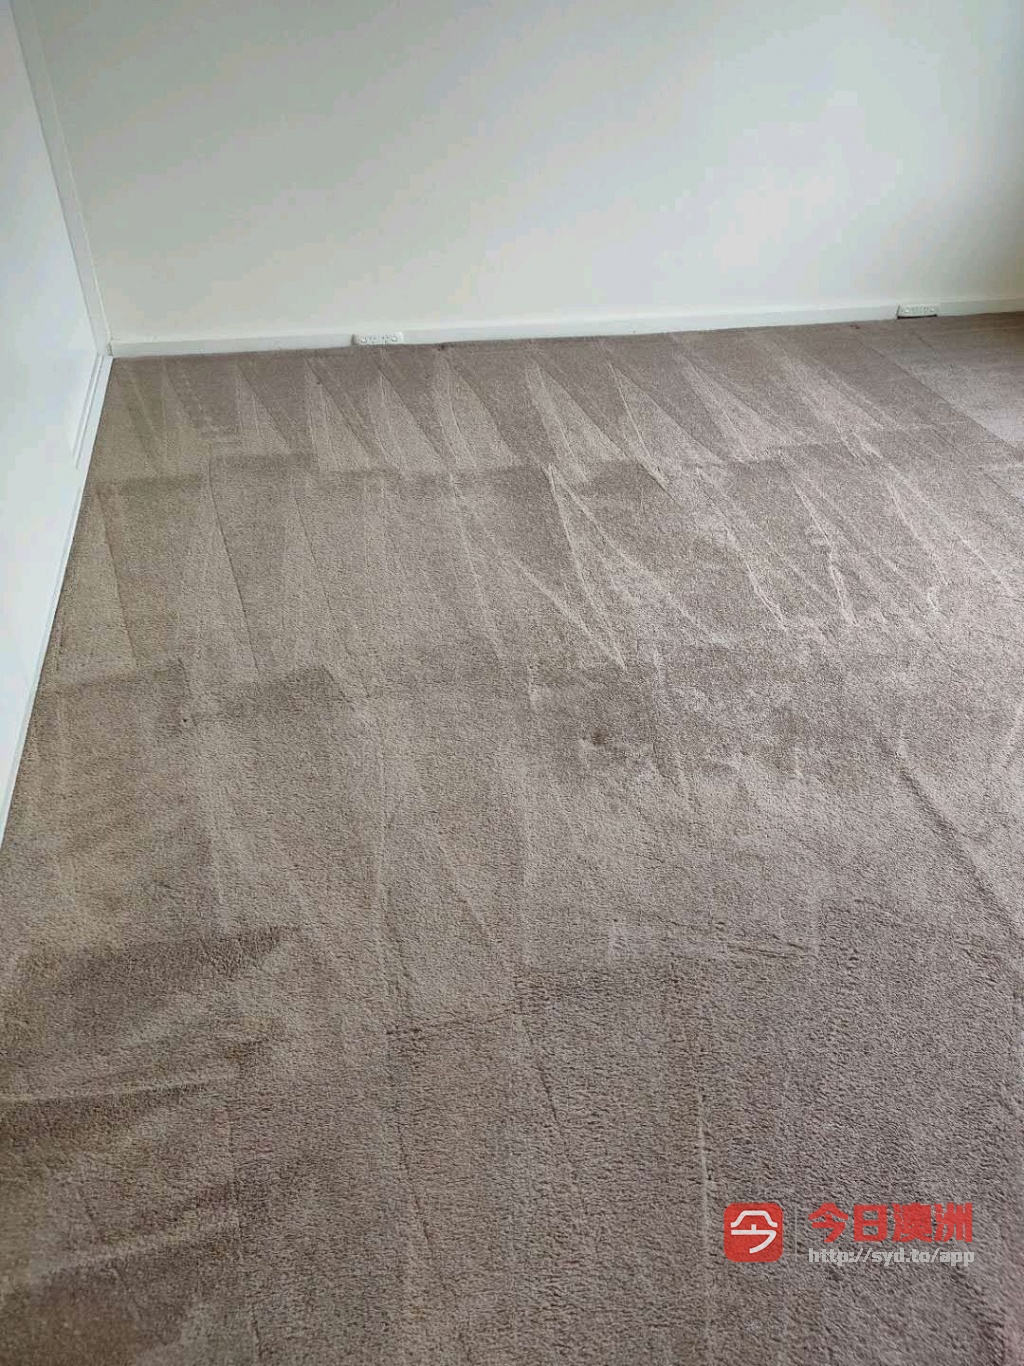  威猛清洁  最牛逼的地板补漆 地板更换 地毯蒸洗 地毯更换 100傍金退还